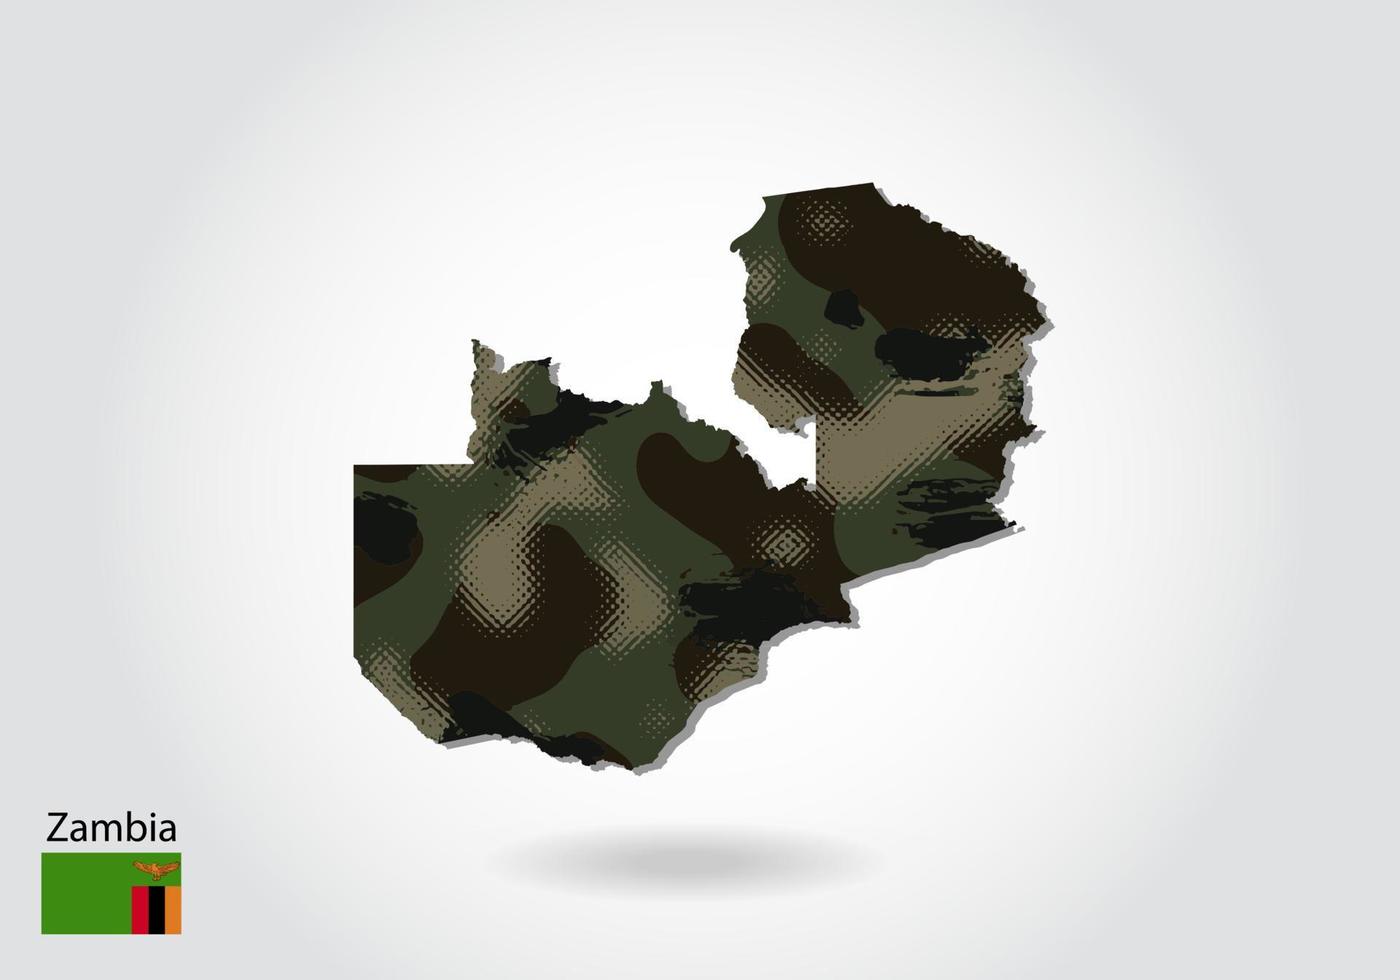 mapa da Zâmbia com padrão de camuflagem, floresta - textura verde no mapa. conceito militar para exército, soldado e guerra. brasão, bandeira. vetor